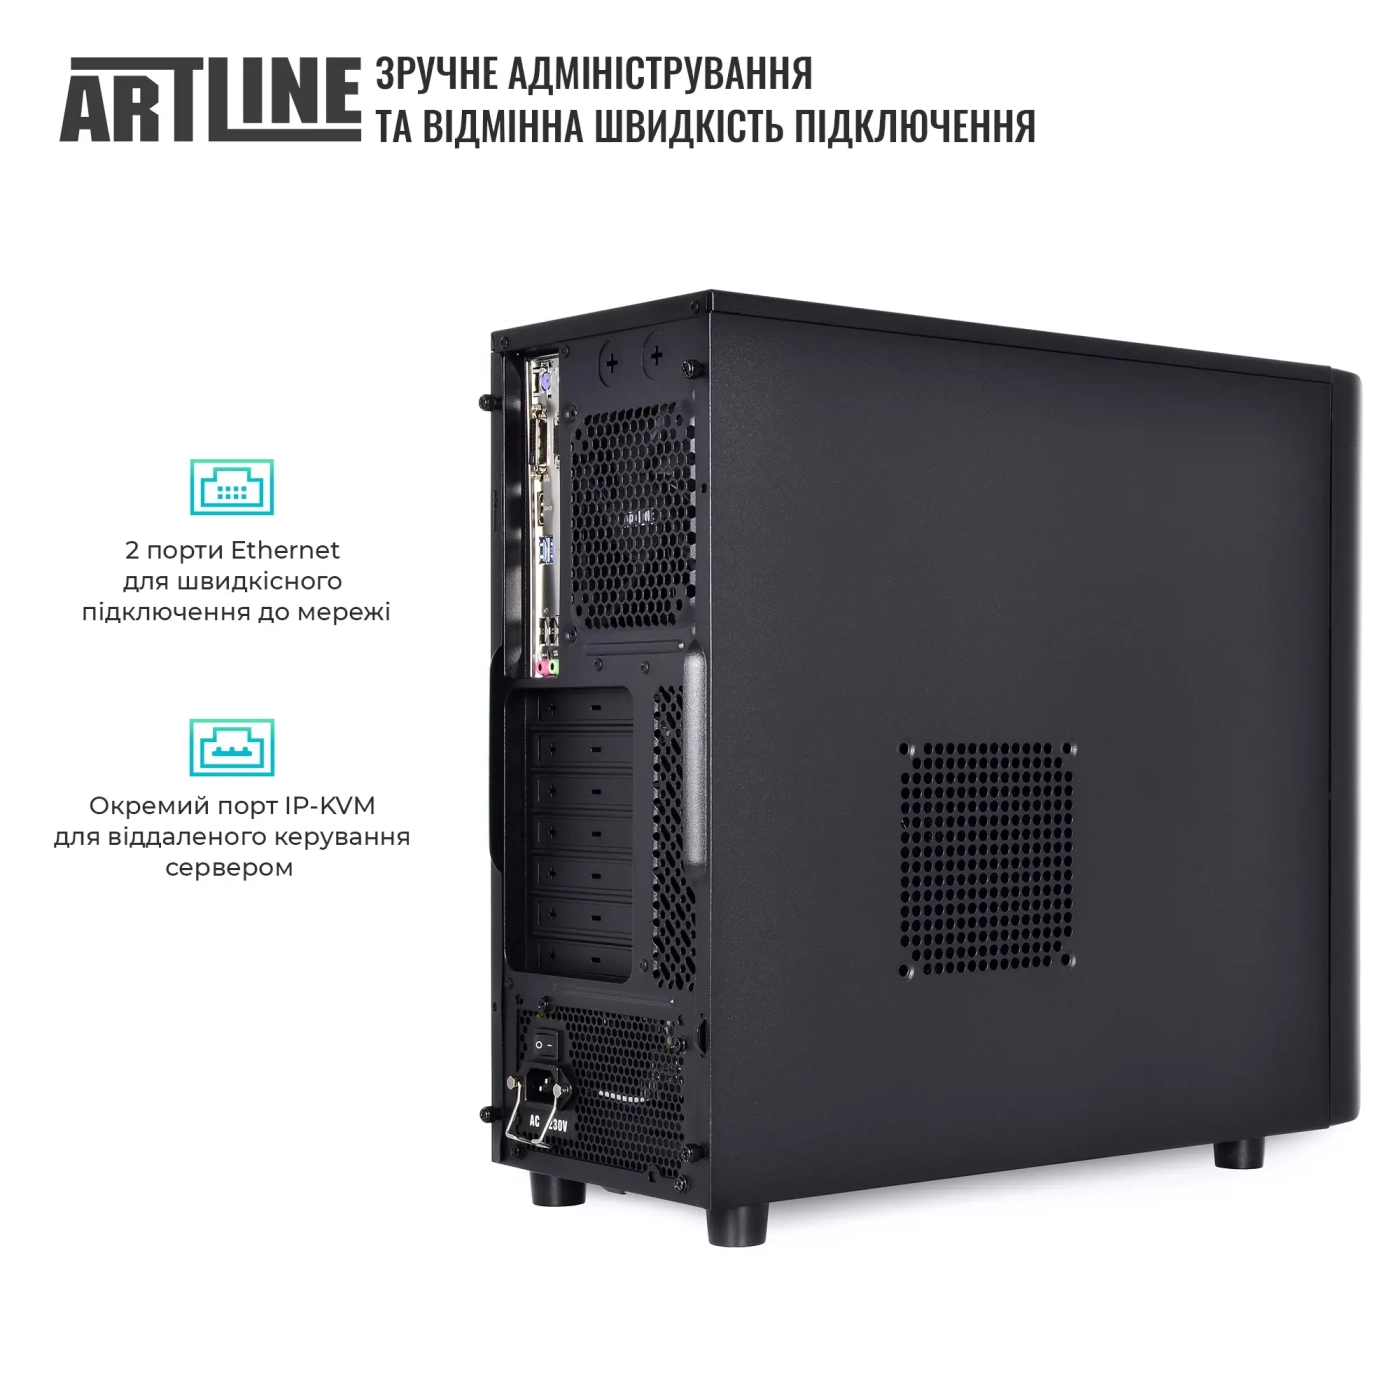 Купить Сервер ARTLINE Business T36 (T36v26) - фото 4